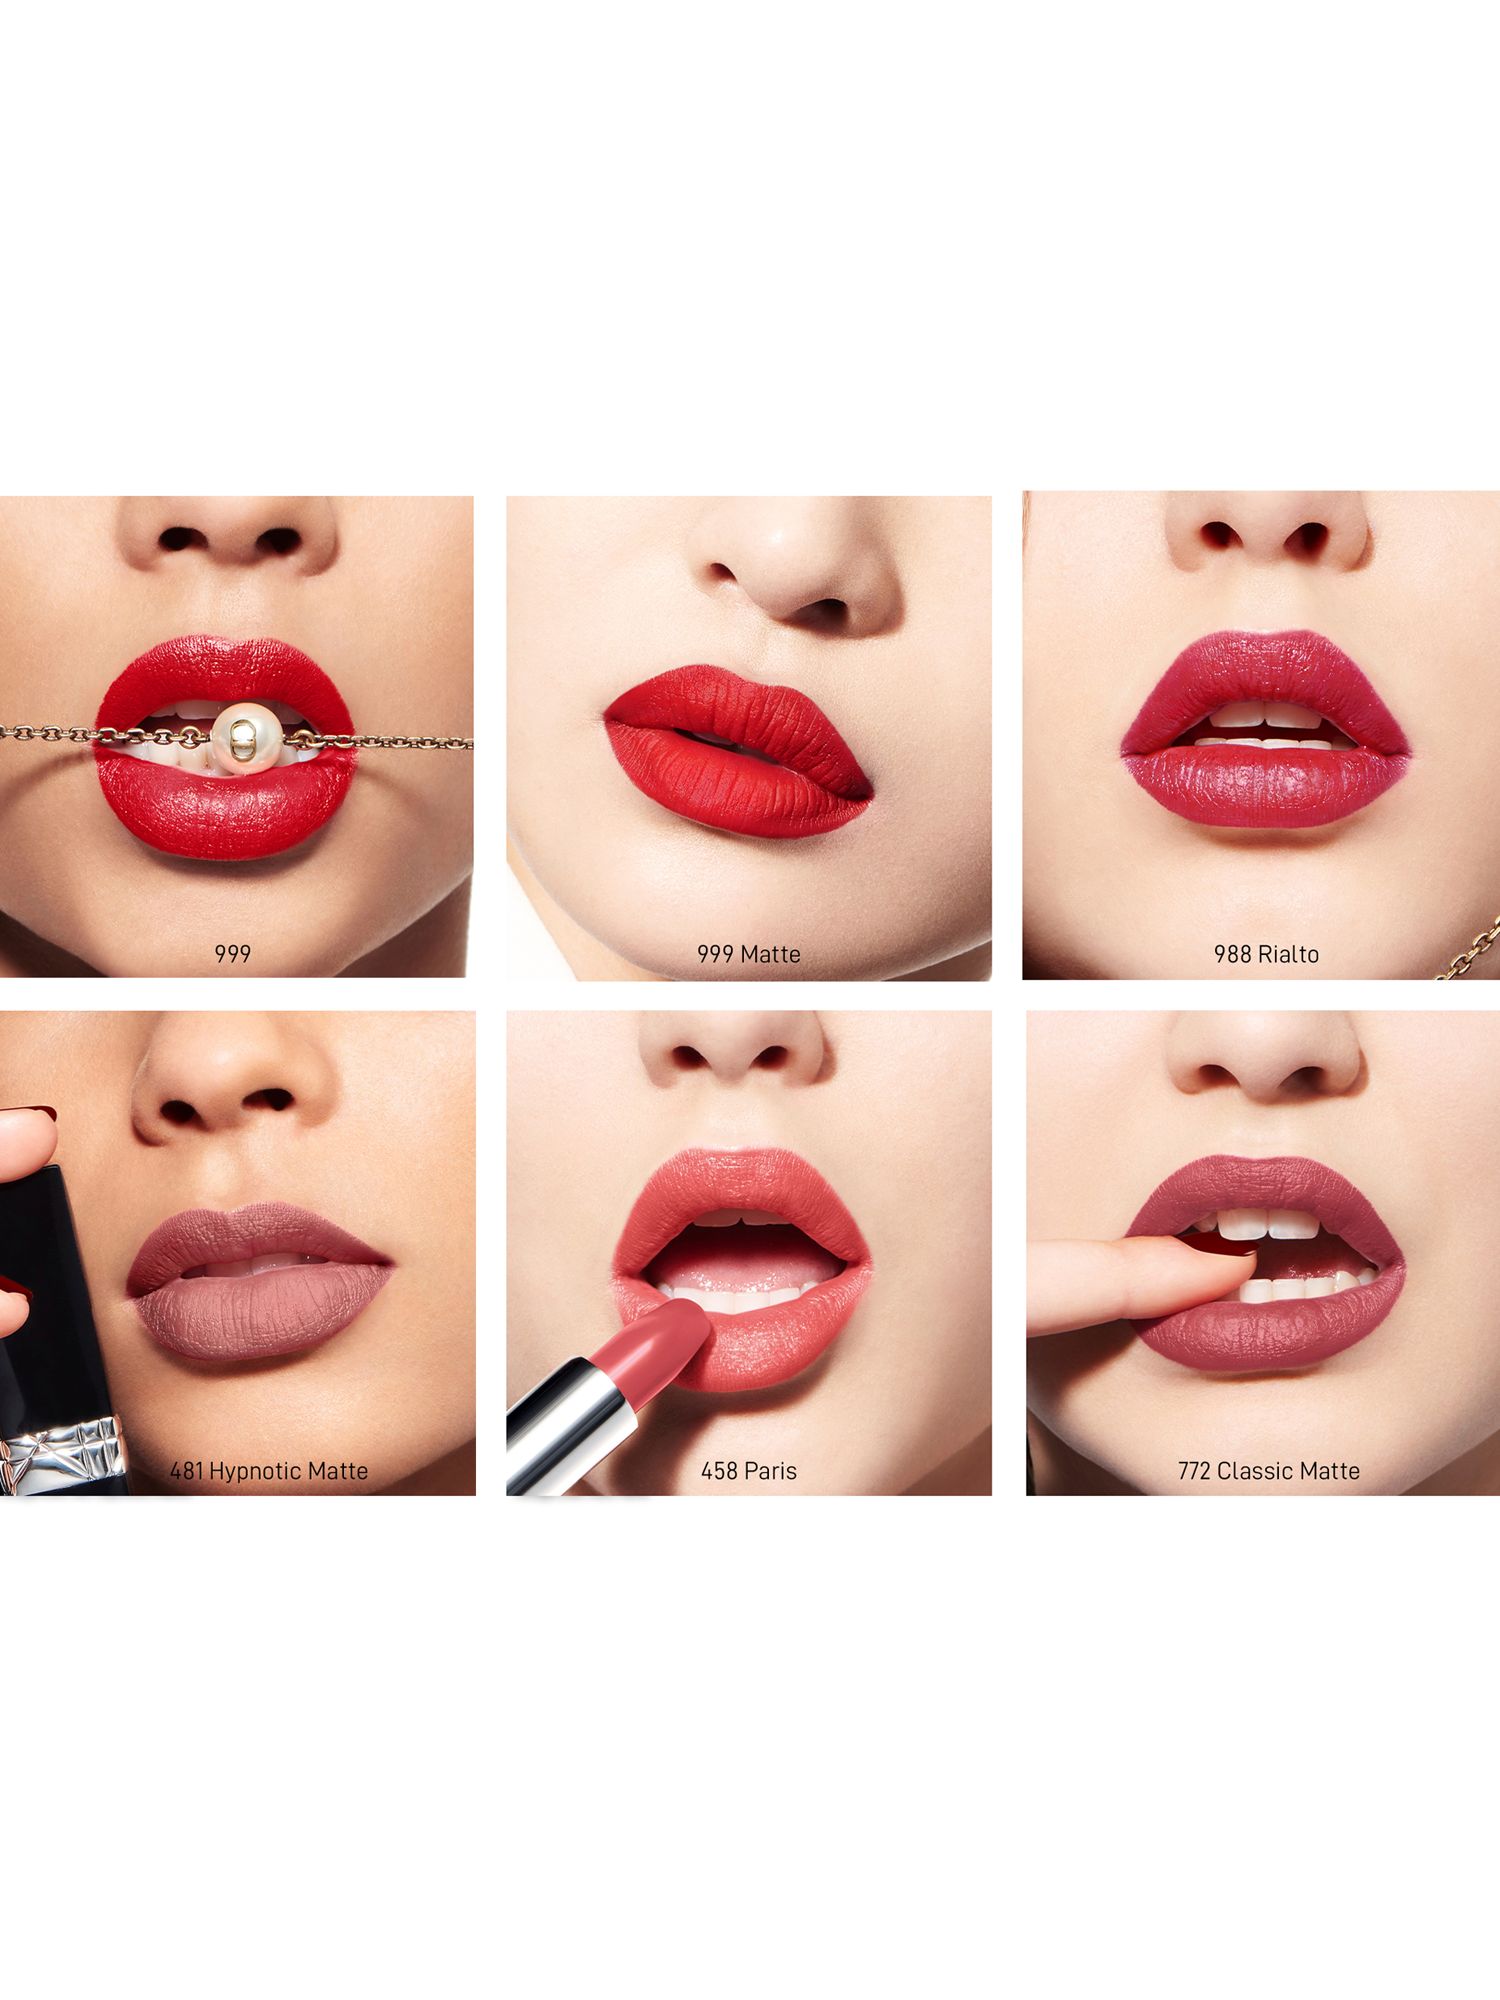 dior refillable lipstick